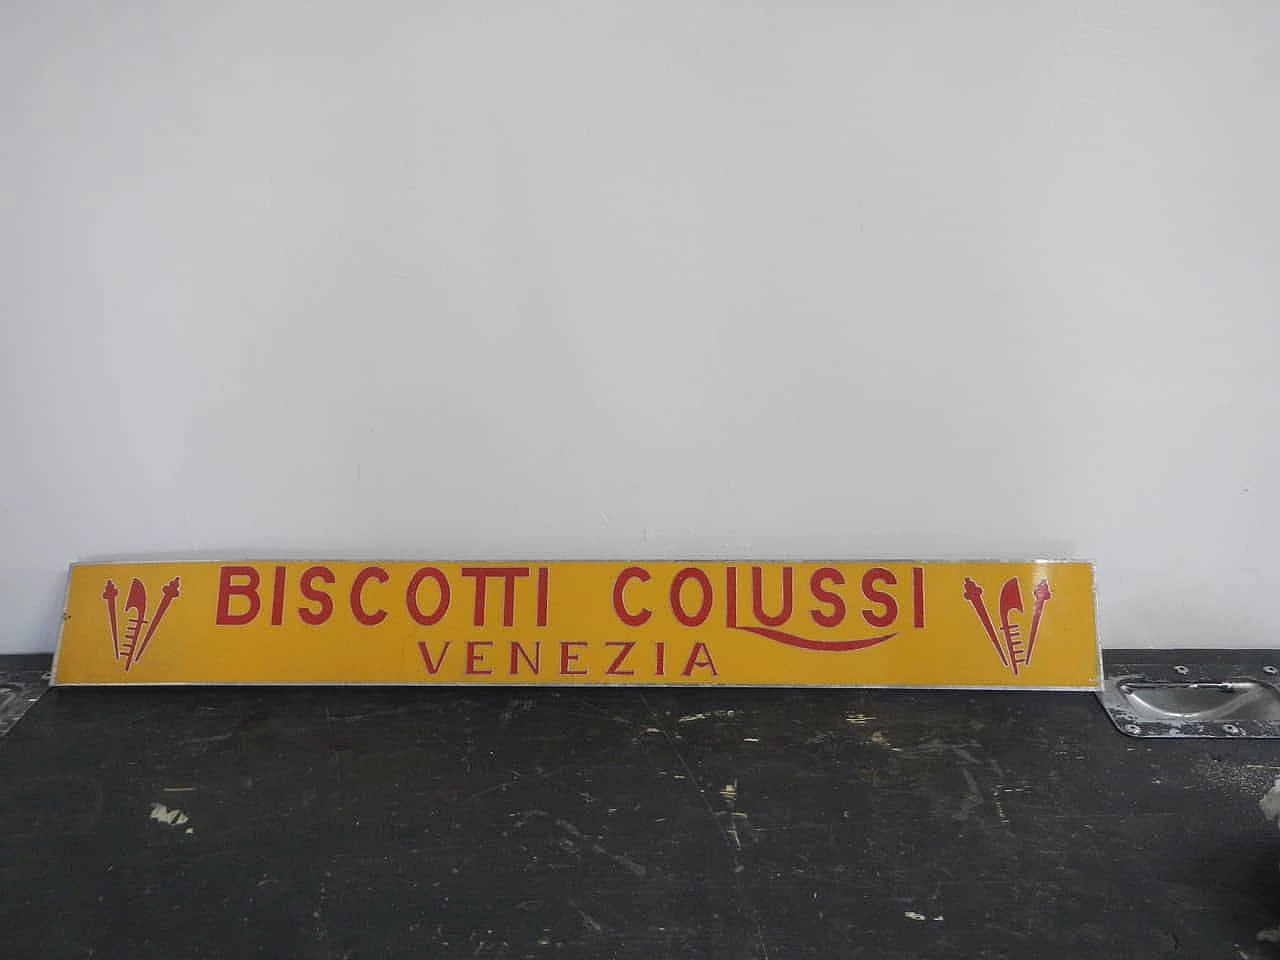 Biscotti Colussi Venezia sign, 1950s 1